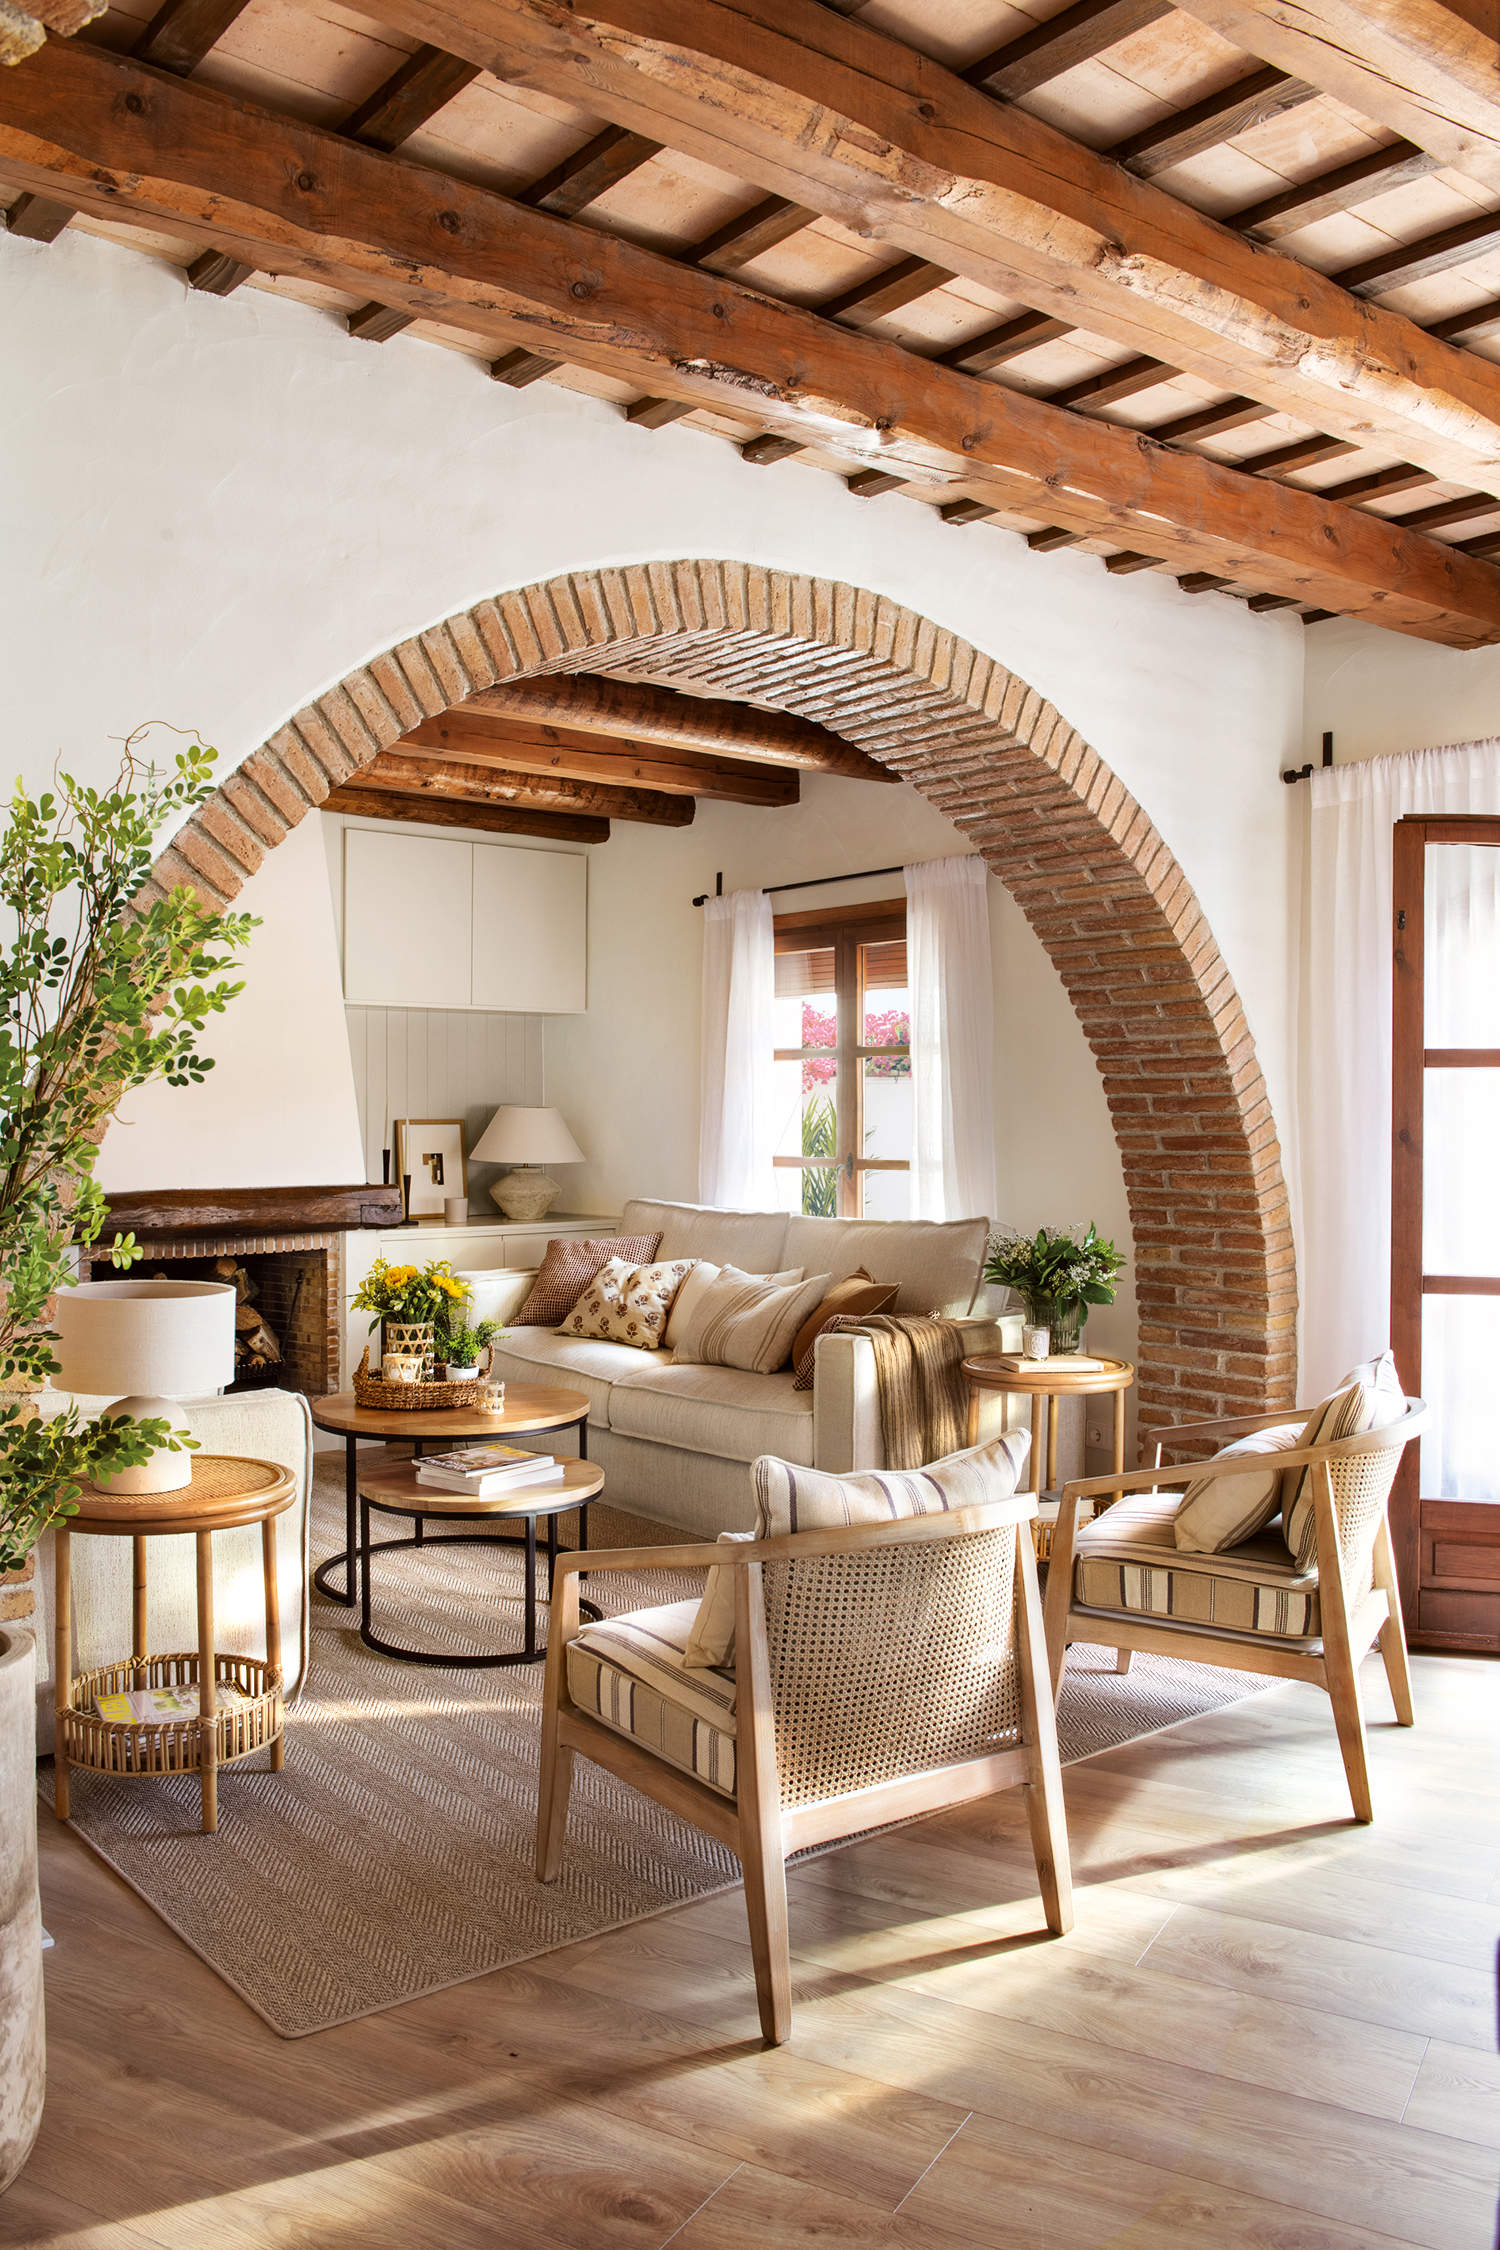 Salón cálido con sofá beige, butacas de madera y chimenea de obra